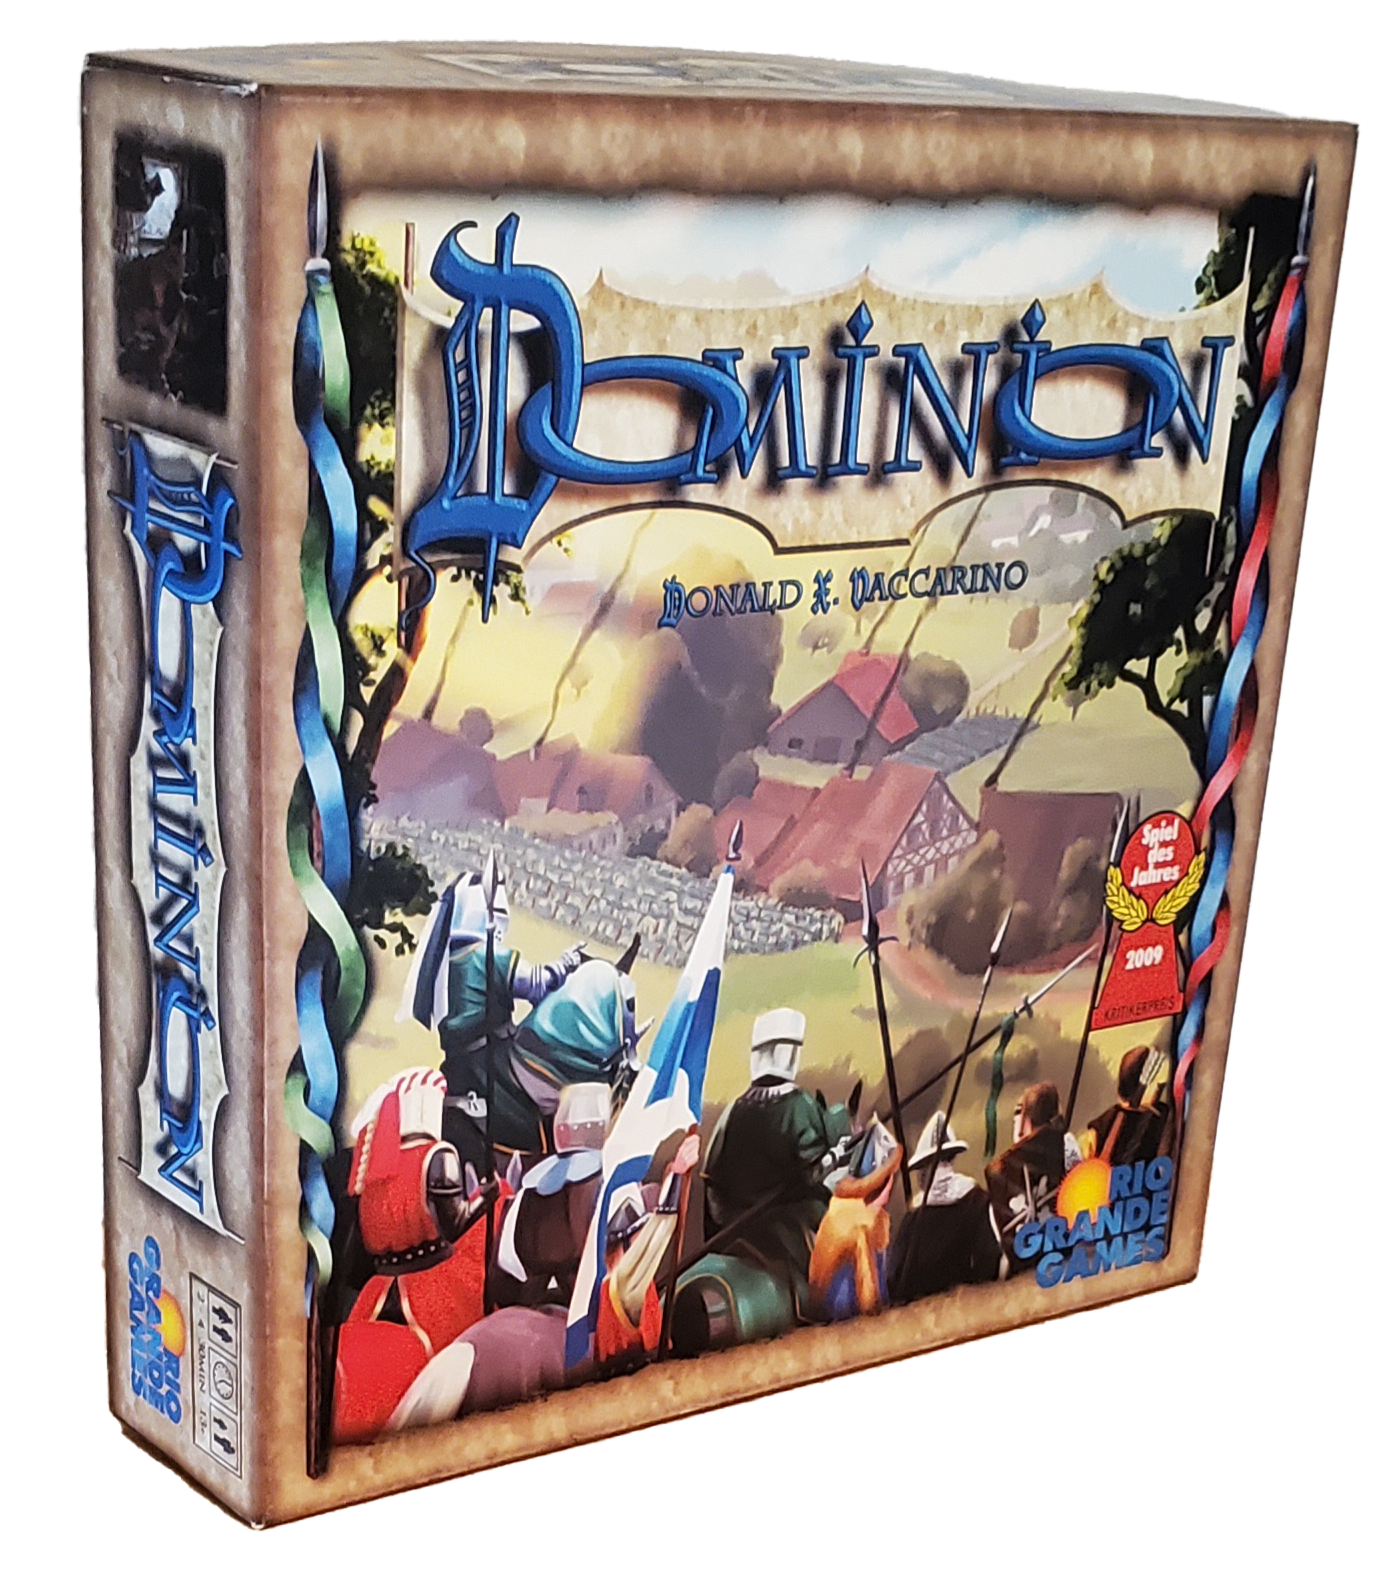 The board game Dominion by Rio Grande Games